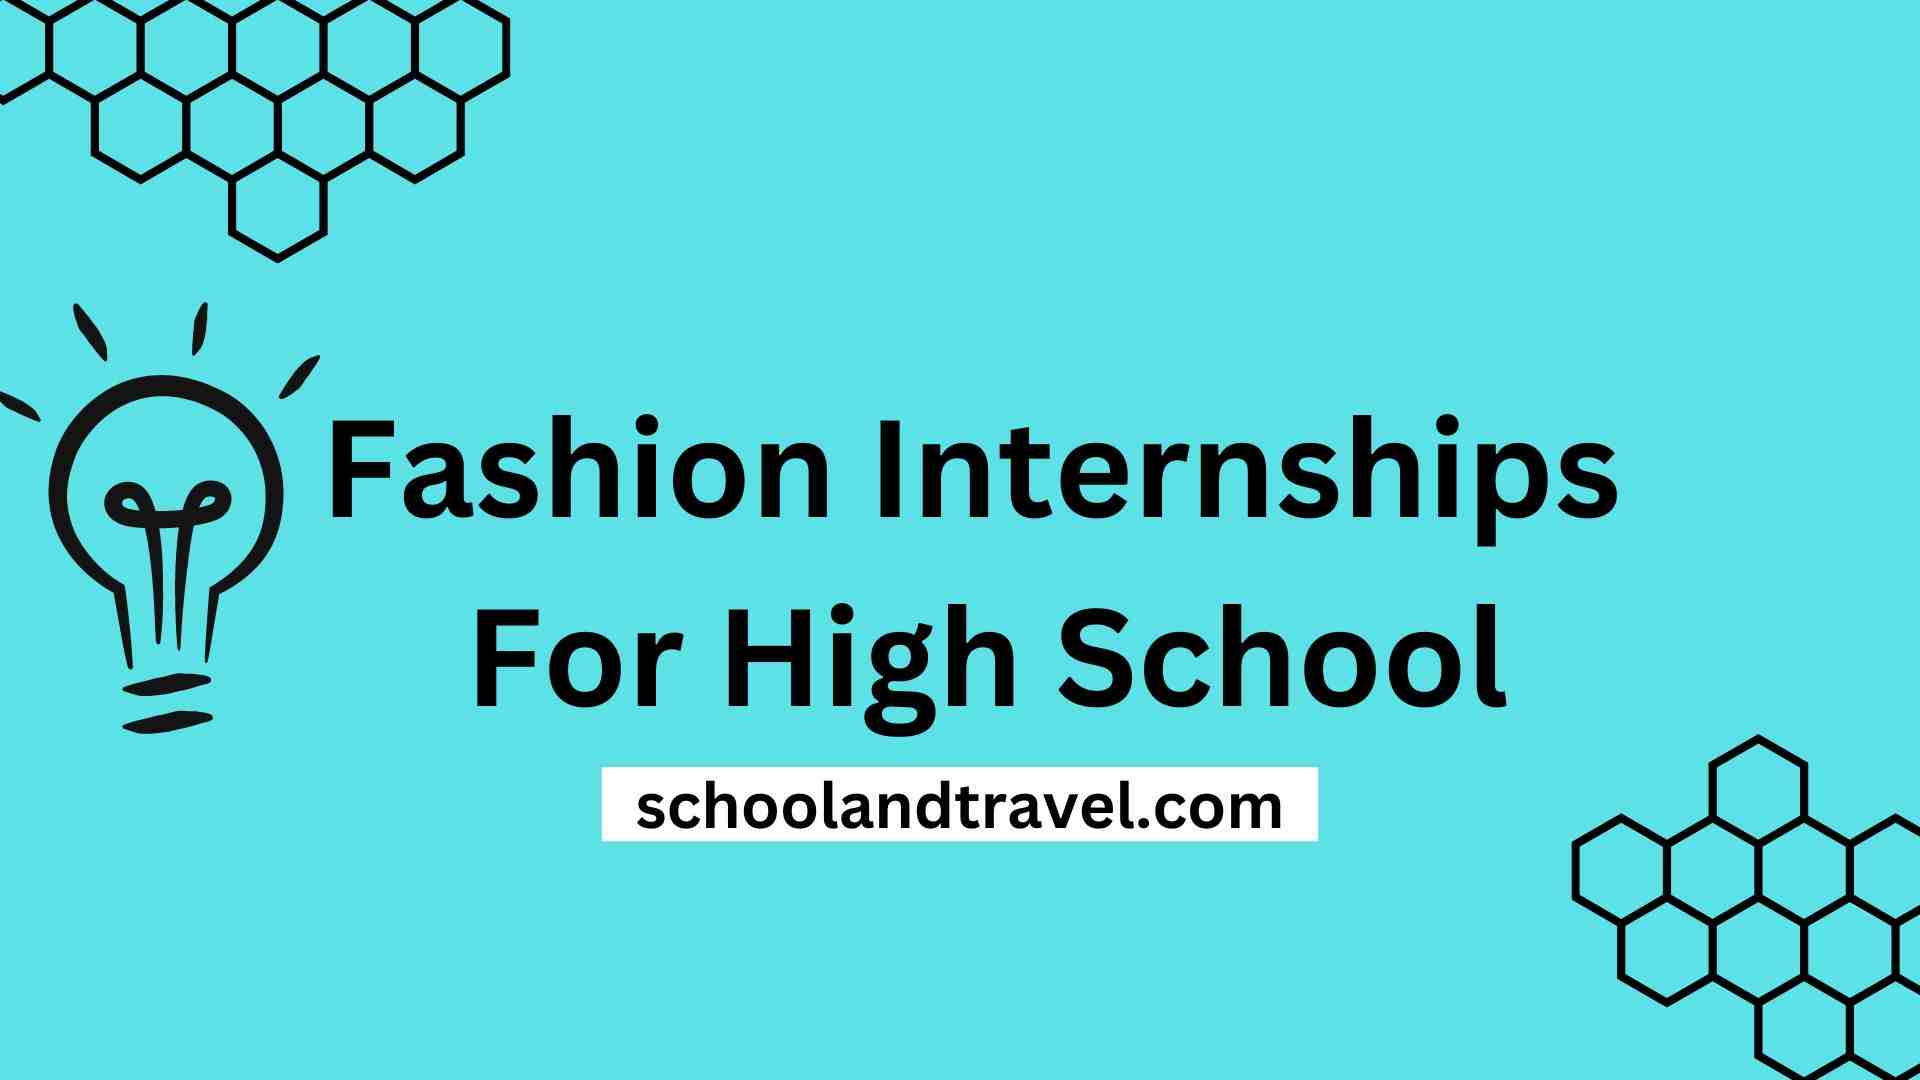 Fashion Internships For High School